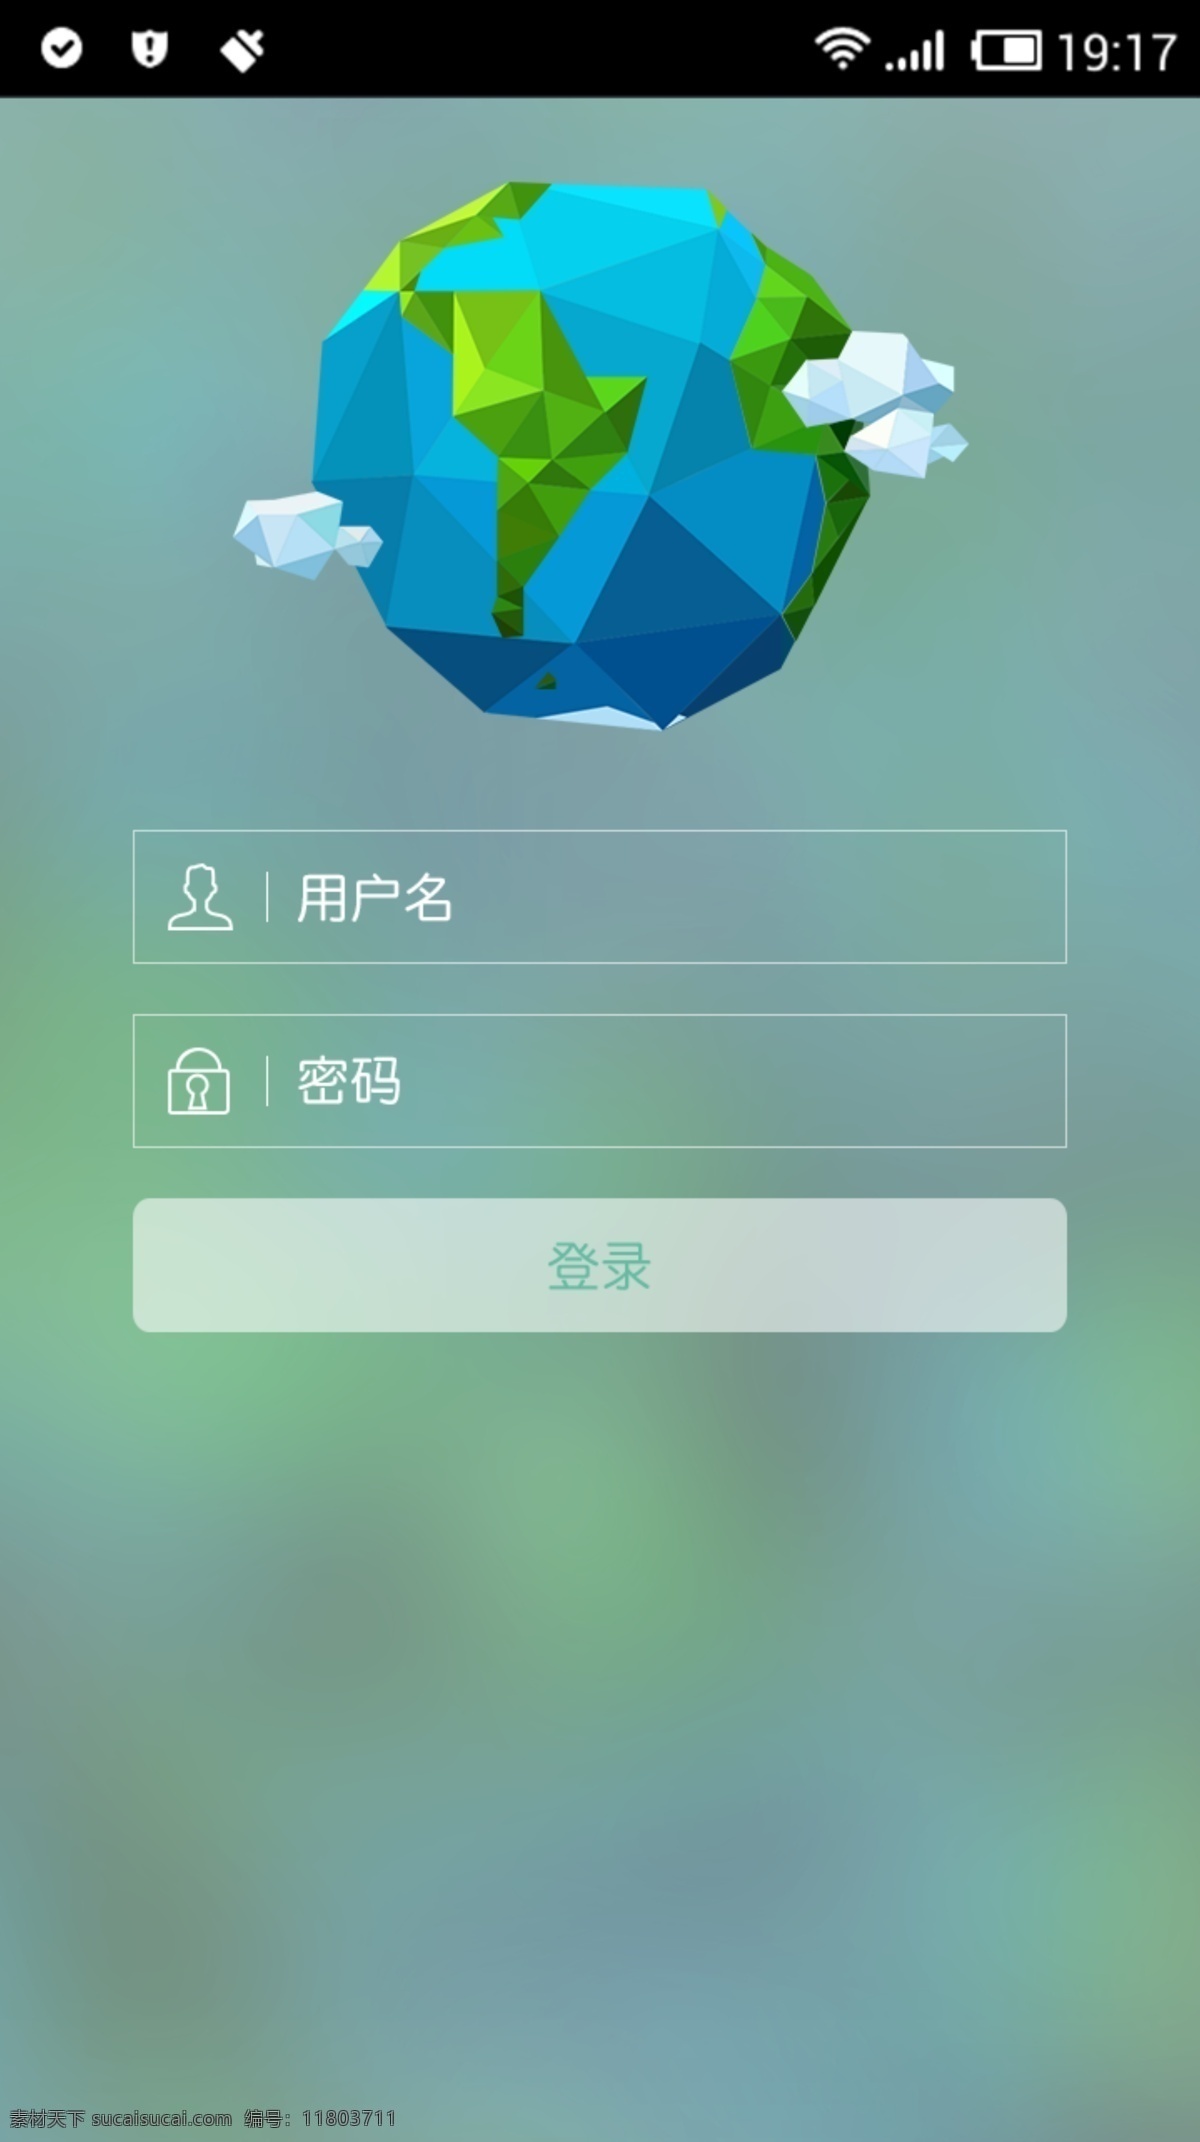 app 登录 白云 大海 地球 绿色 密码 时间 信号 app登录 矢量 用户名 清理 手机 app界面